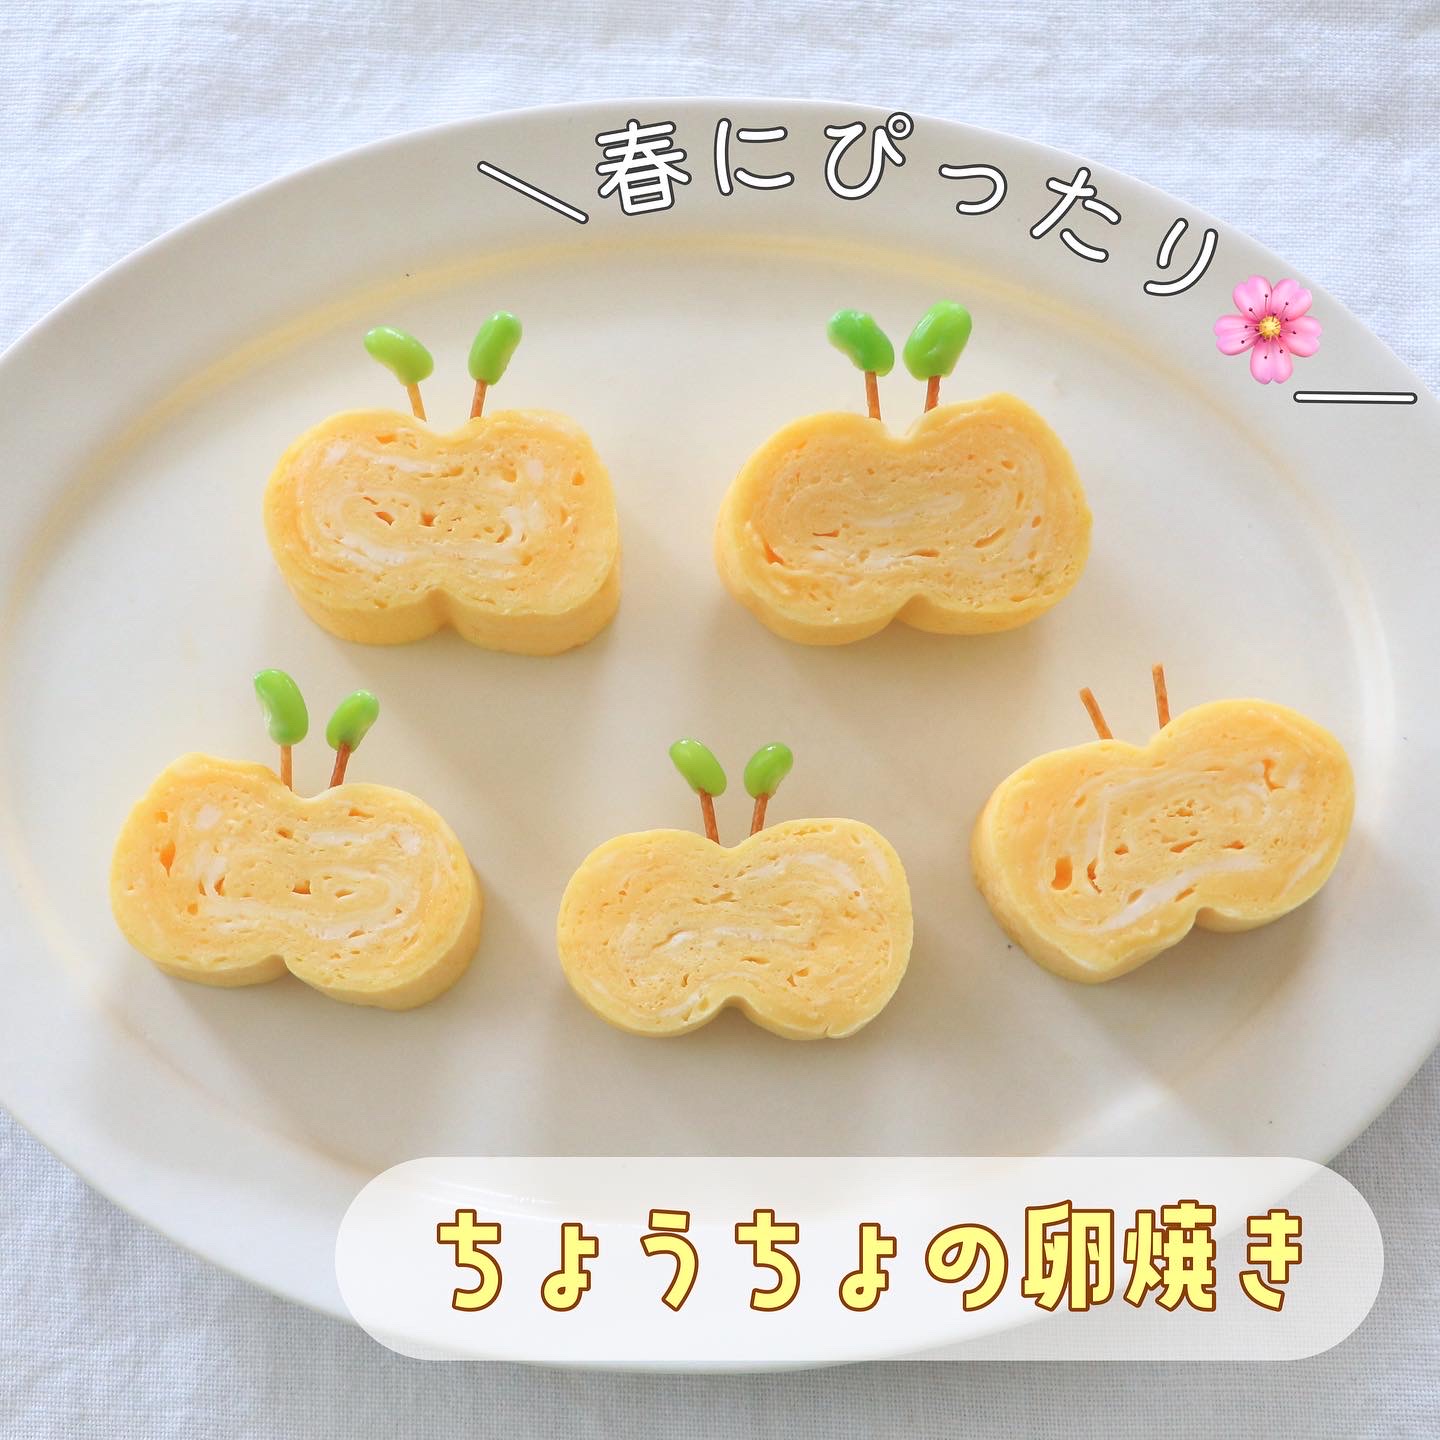 新生活のお弁当に かわいいお弁当のおかず4選 Sana Yahoo Japan クリエイターズプログラム